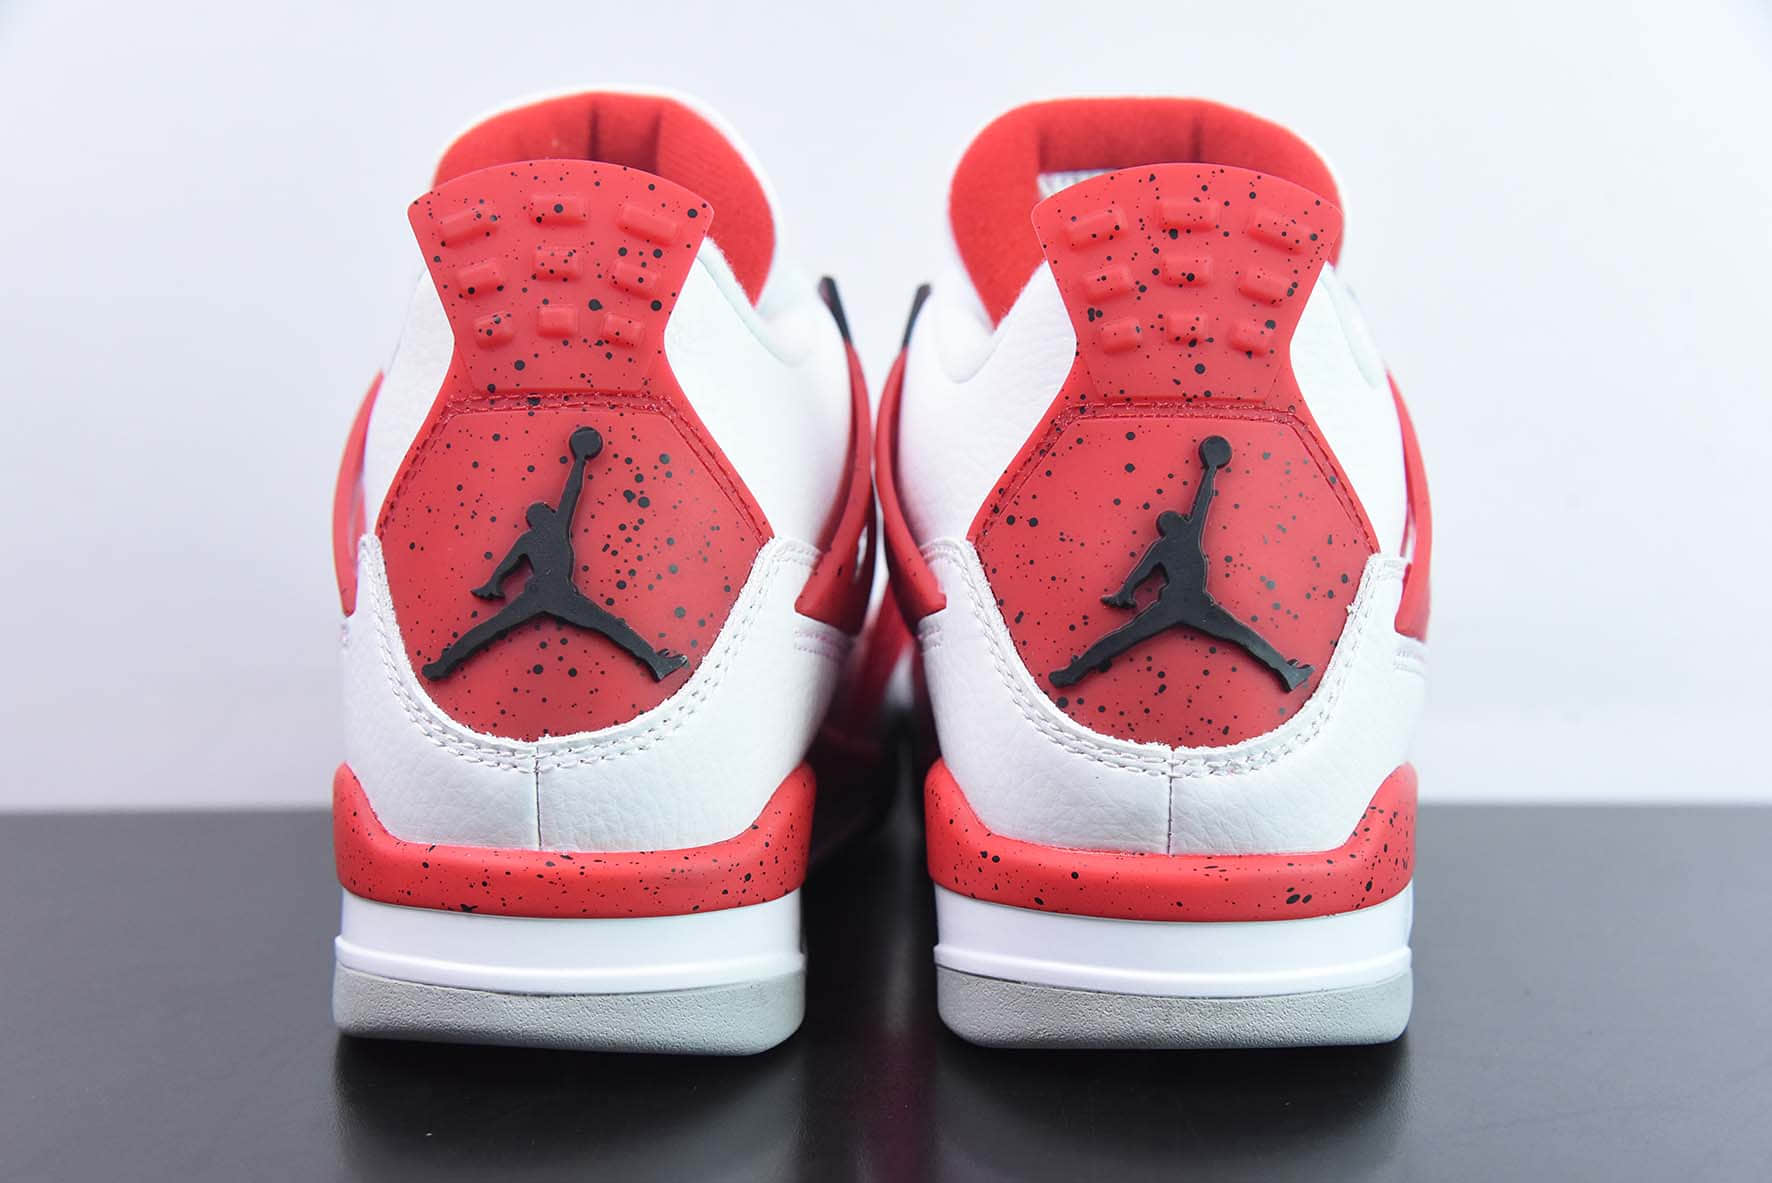 乔丹Air Jordan 4 “Red Cement”AJ4白红水泥男子文化篮球鞋纯原版本 货号： DH6927-161